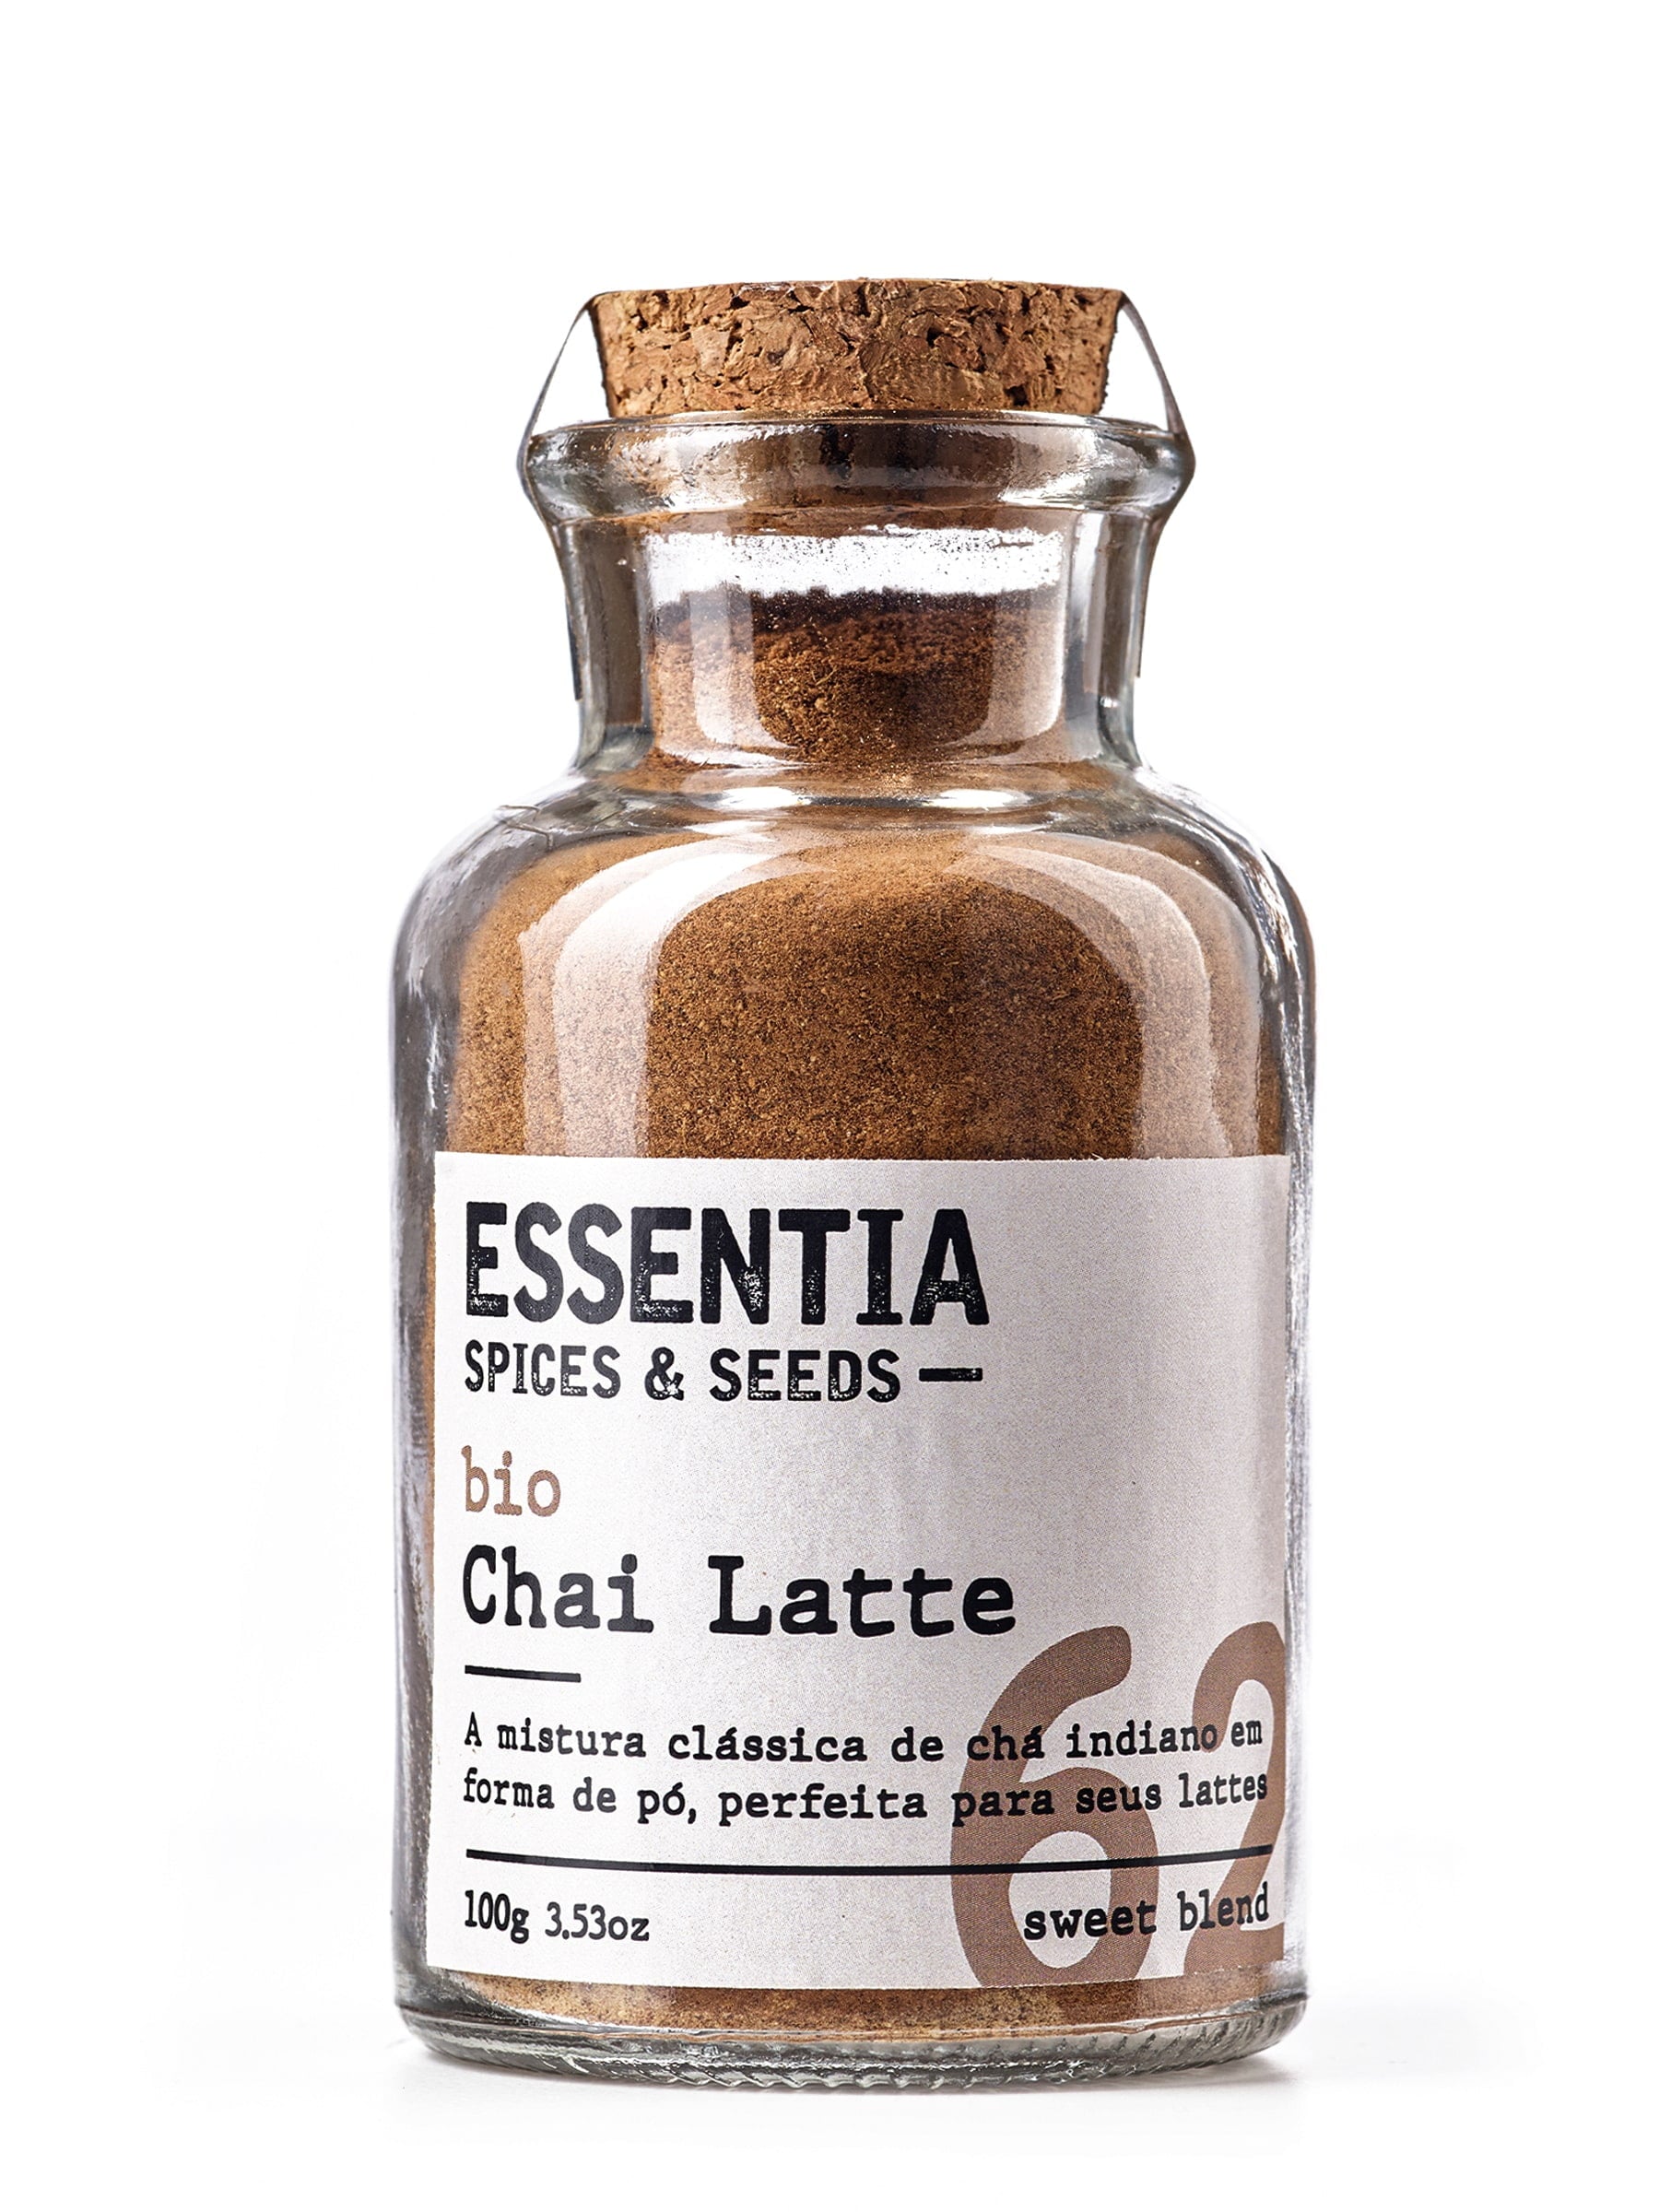 Chai Latte Blend – The Essentia